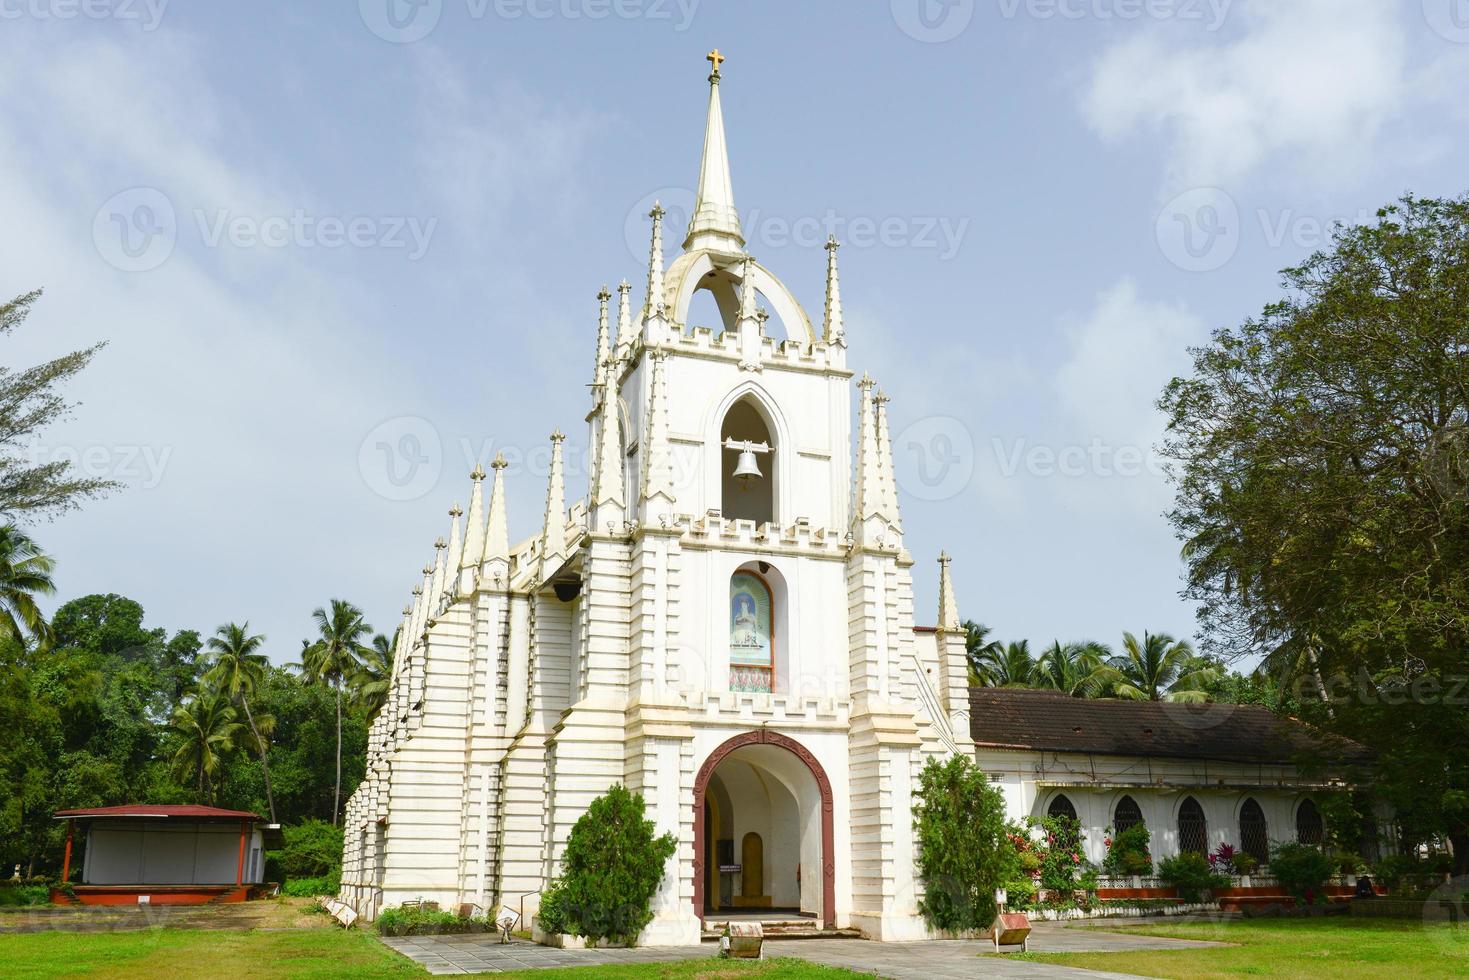 une église ou une cathédrale coloniale portugaise à goa, en inde photo